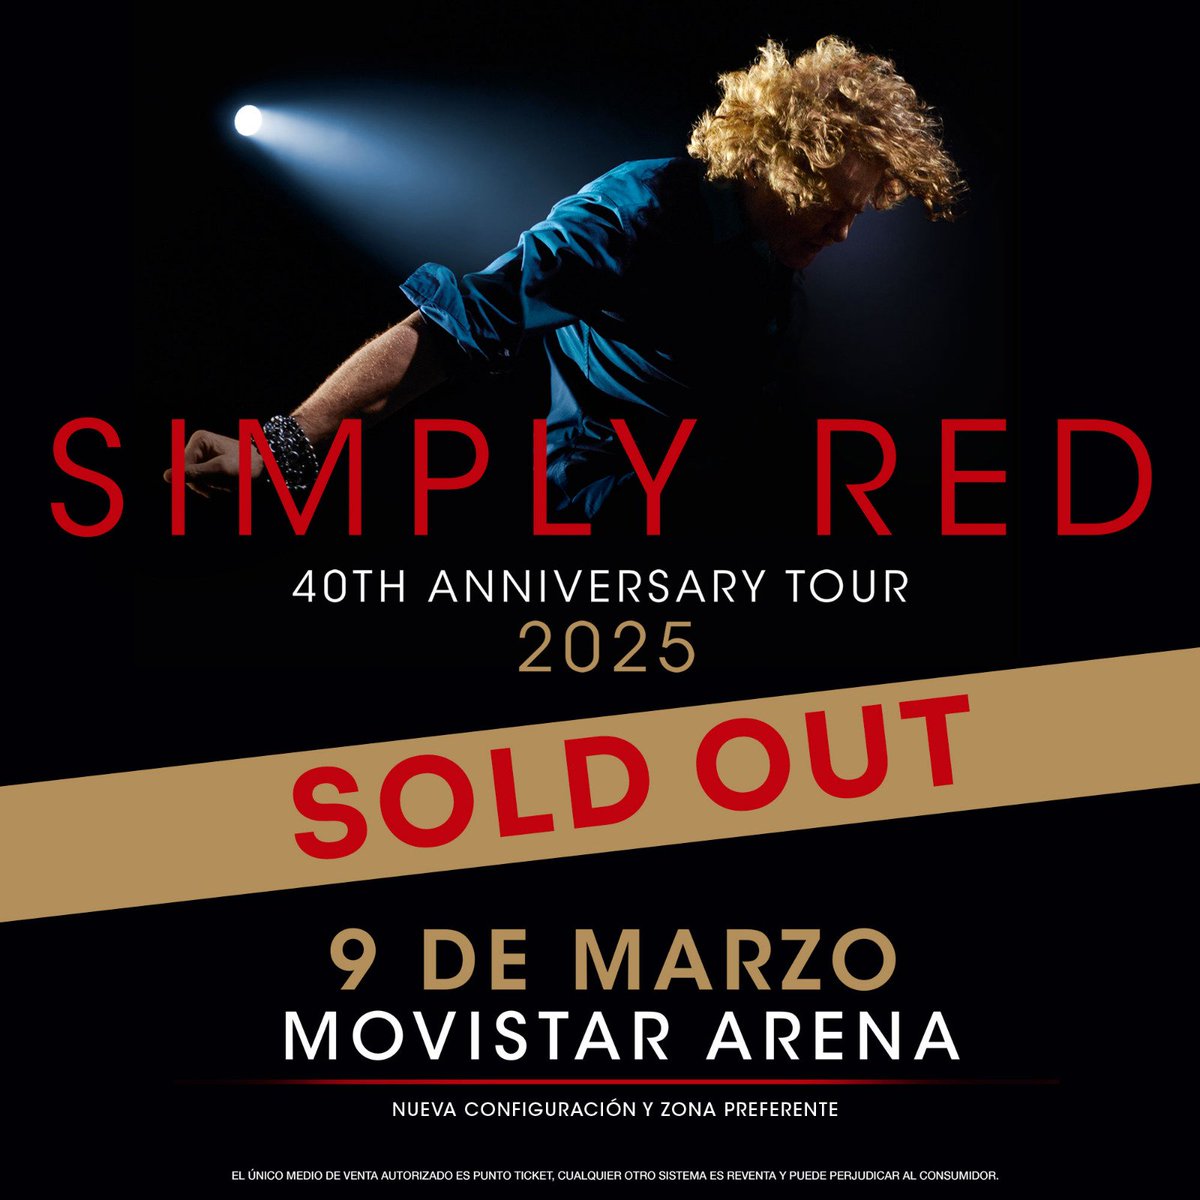 Lo hicieron de nuevo! 😱 Simply Red bate récord de ventas en nuestro país agotando su 3° show en Movistar Arena! Un aplauso a sus fans acérrimos 👏 Simply Red en Chile 40th Anniversary Tour 7, 8 y 9 de Marzo 2025 #simplyred #simplyredfans #simplyredconcerts #simplyredchile